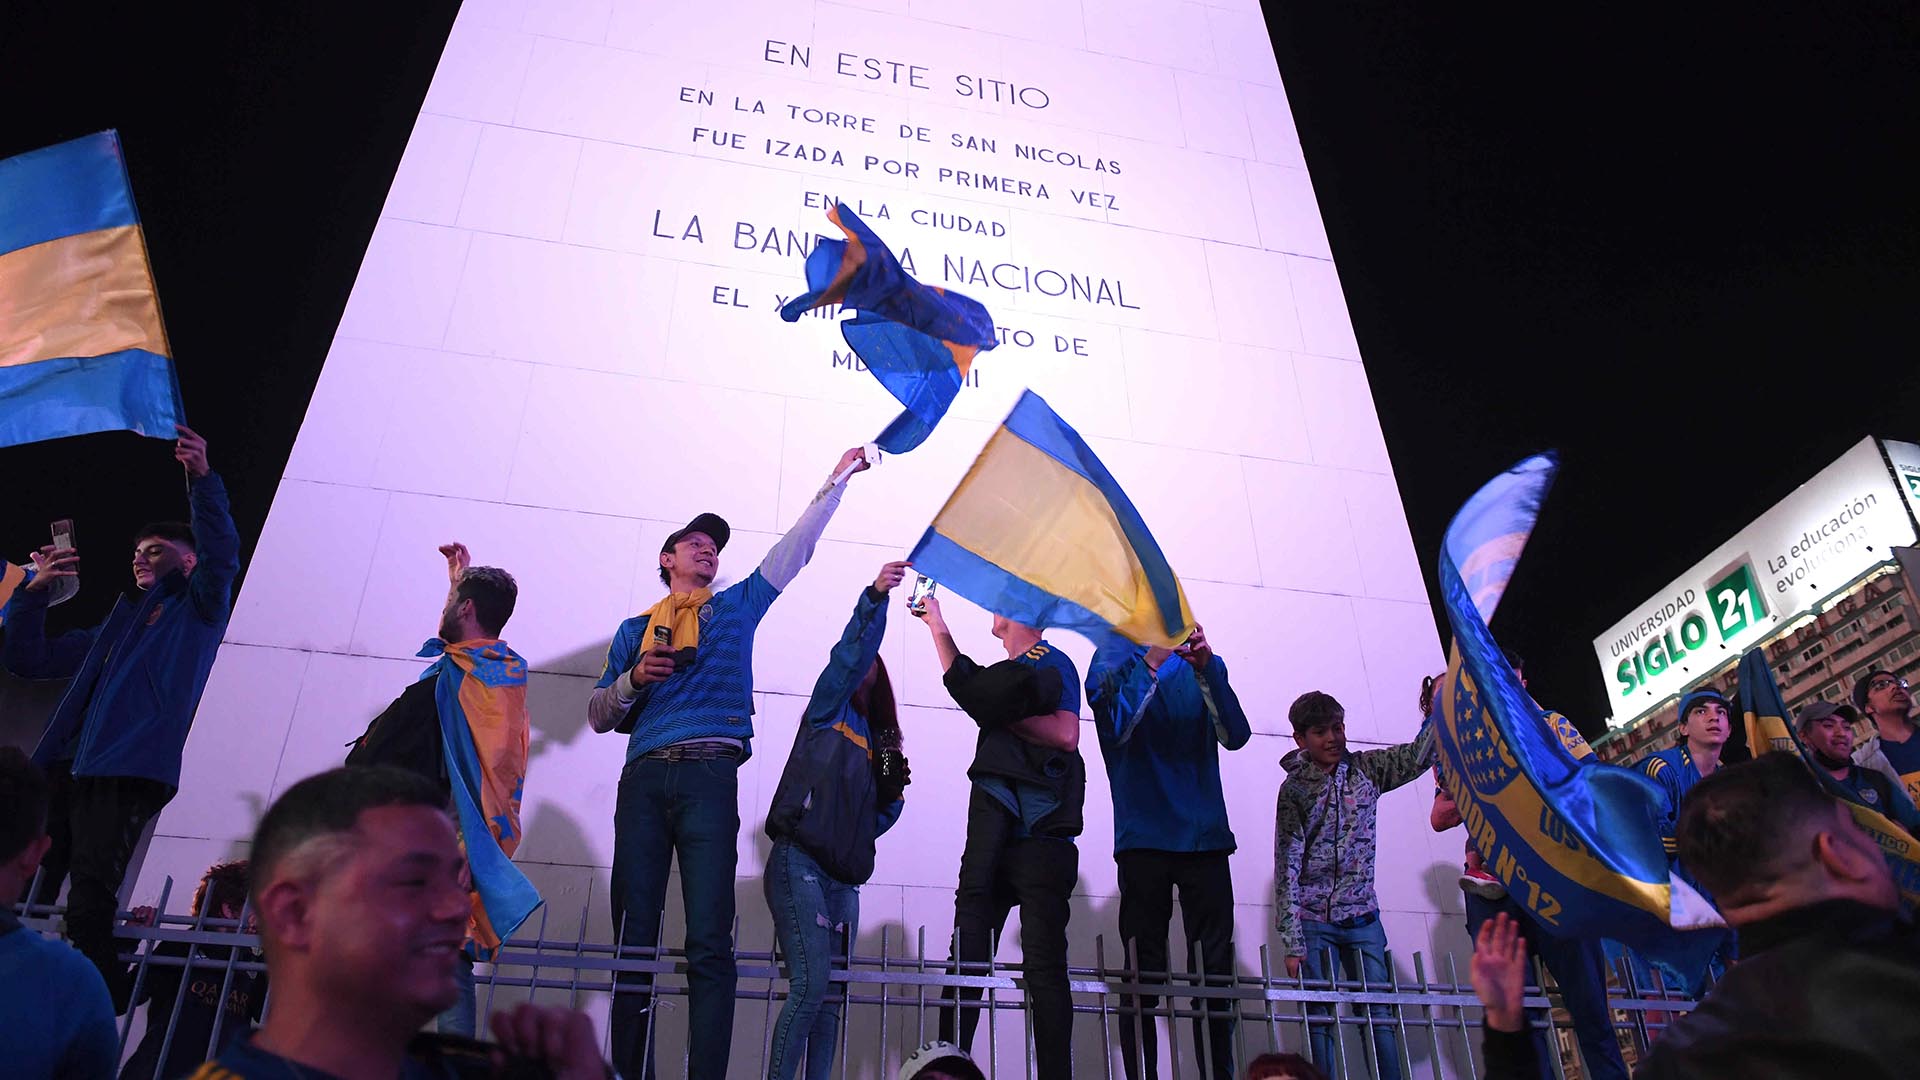 Los fanáticos se colgaron en las rejas del Obelisco para festejar una nueva estrella (Foto: Telam)